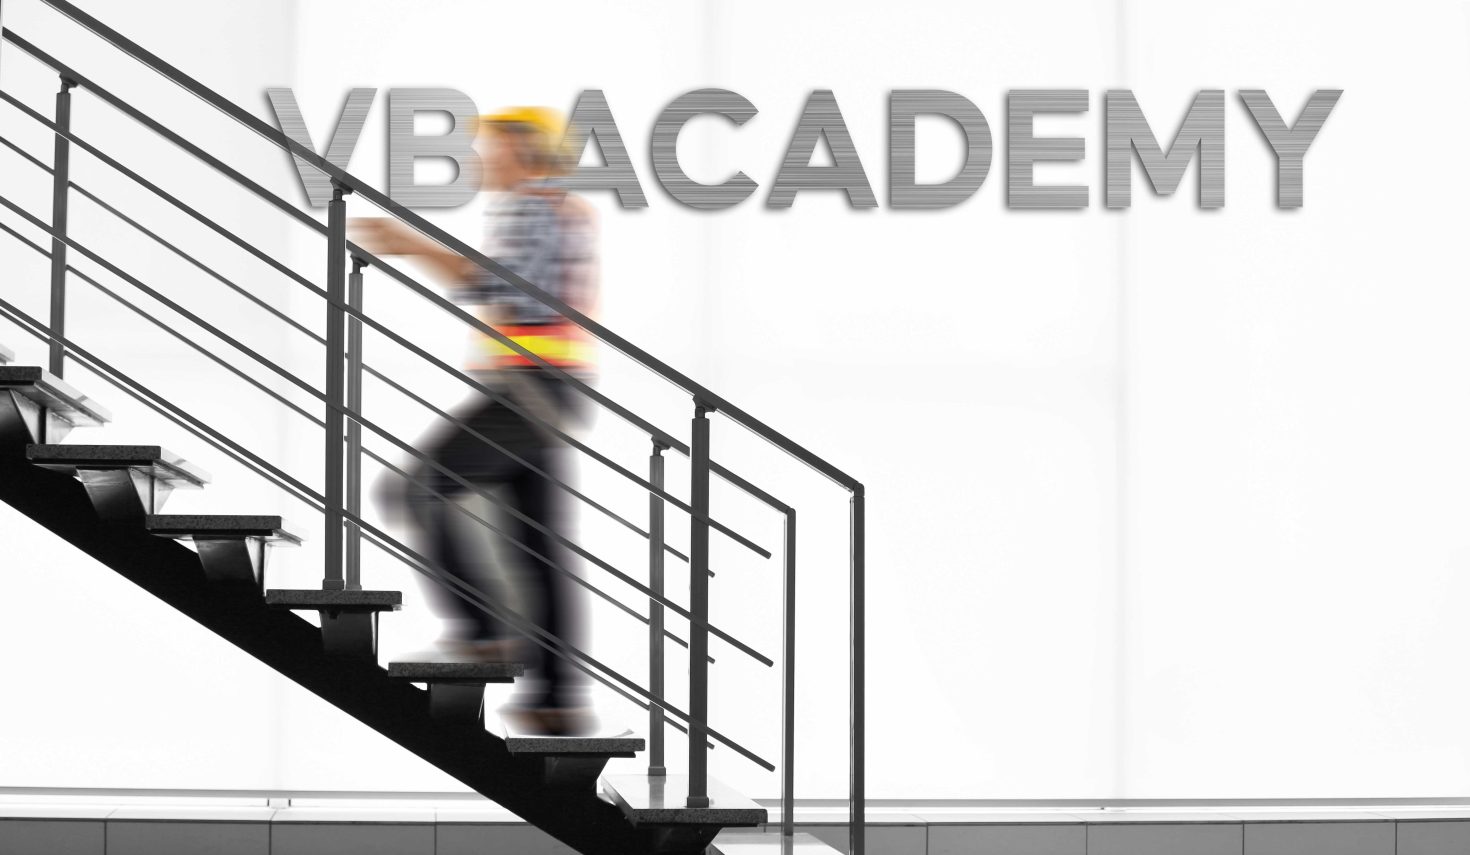 VB Academy